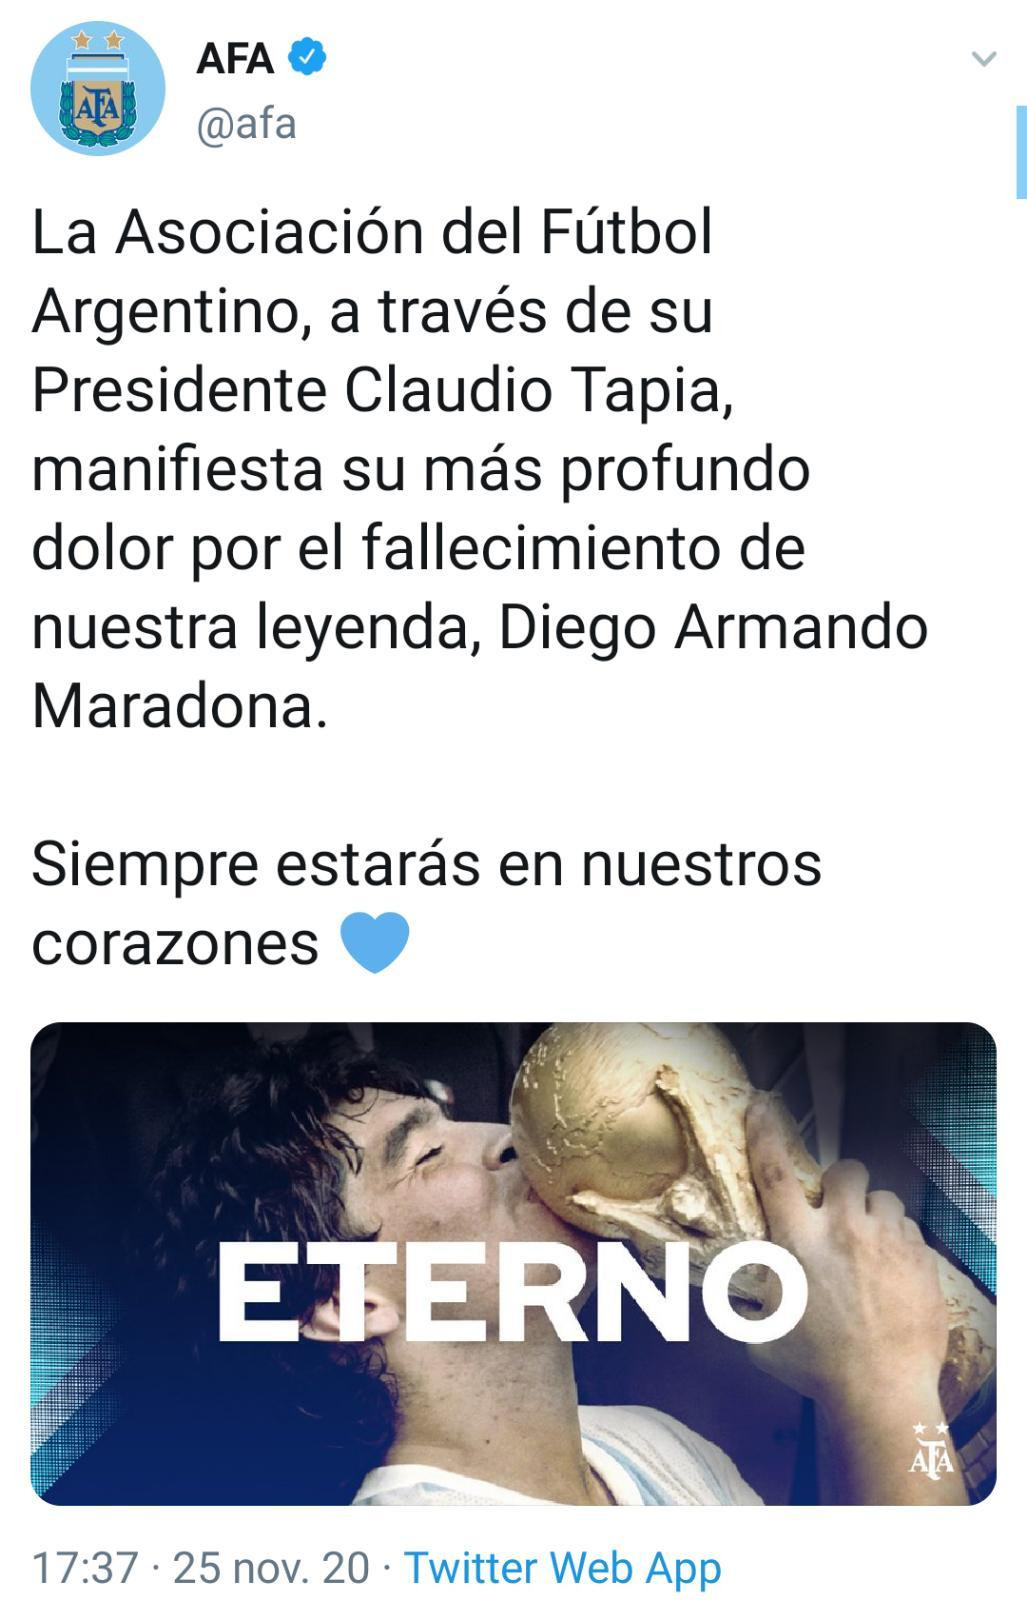 La AFA despide a Maradona